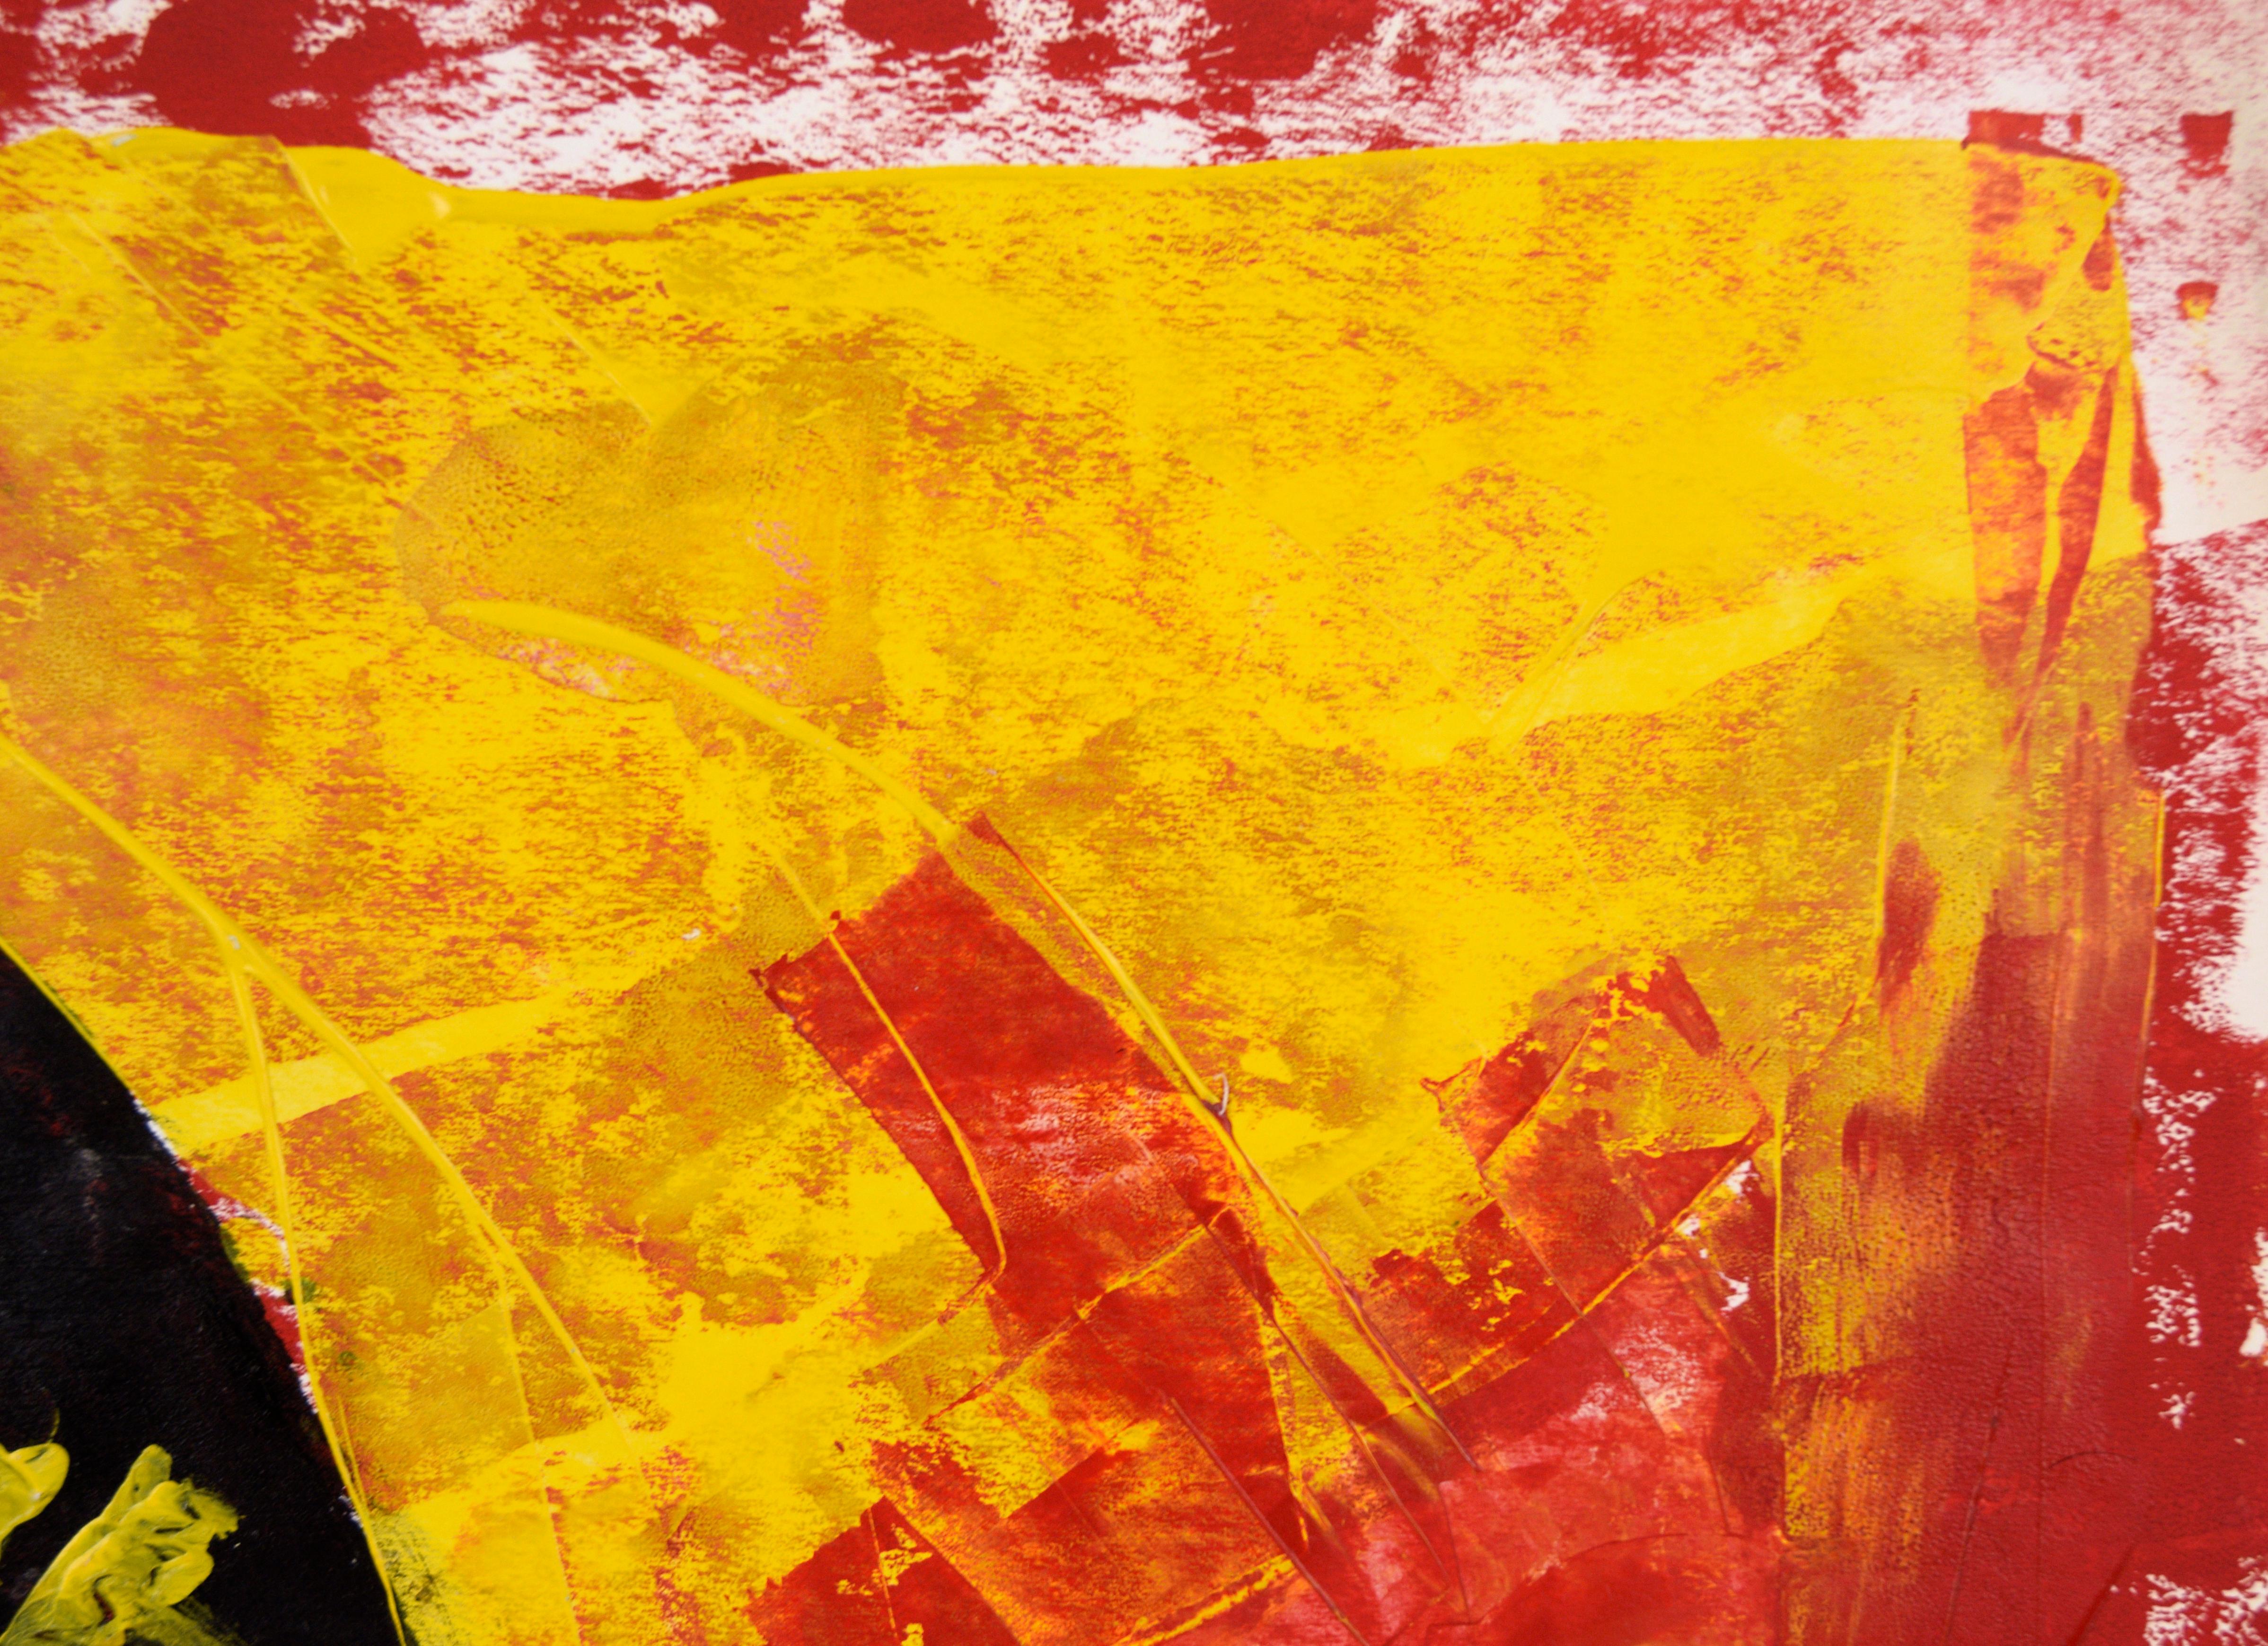 Sombrero dans le masque de fer - Expressionniste abstrait géométrique en acrylique sur papier

Peinture abstraite audacieuse en rouge, jaune et or métallique, représentant un masque noir coiffé d'un chapeau, réalisée par l'artiste californien